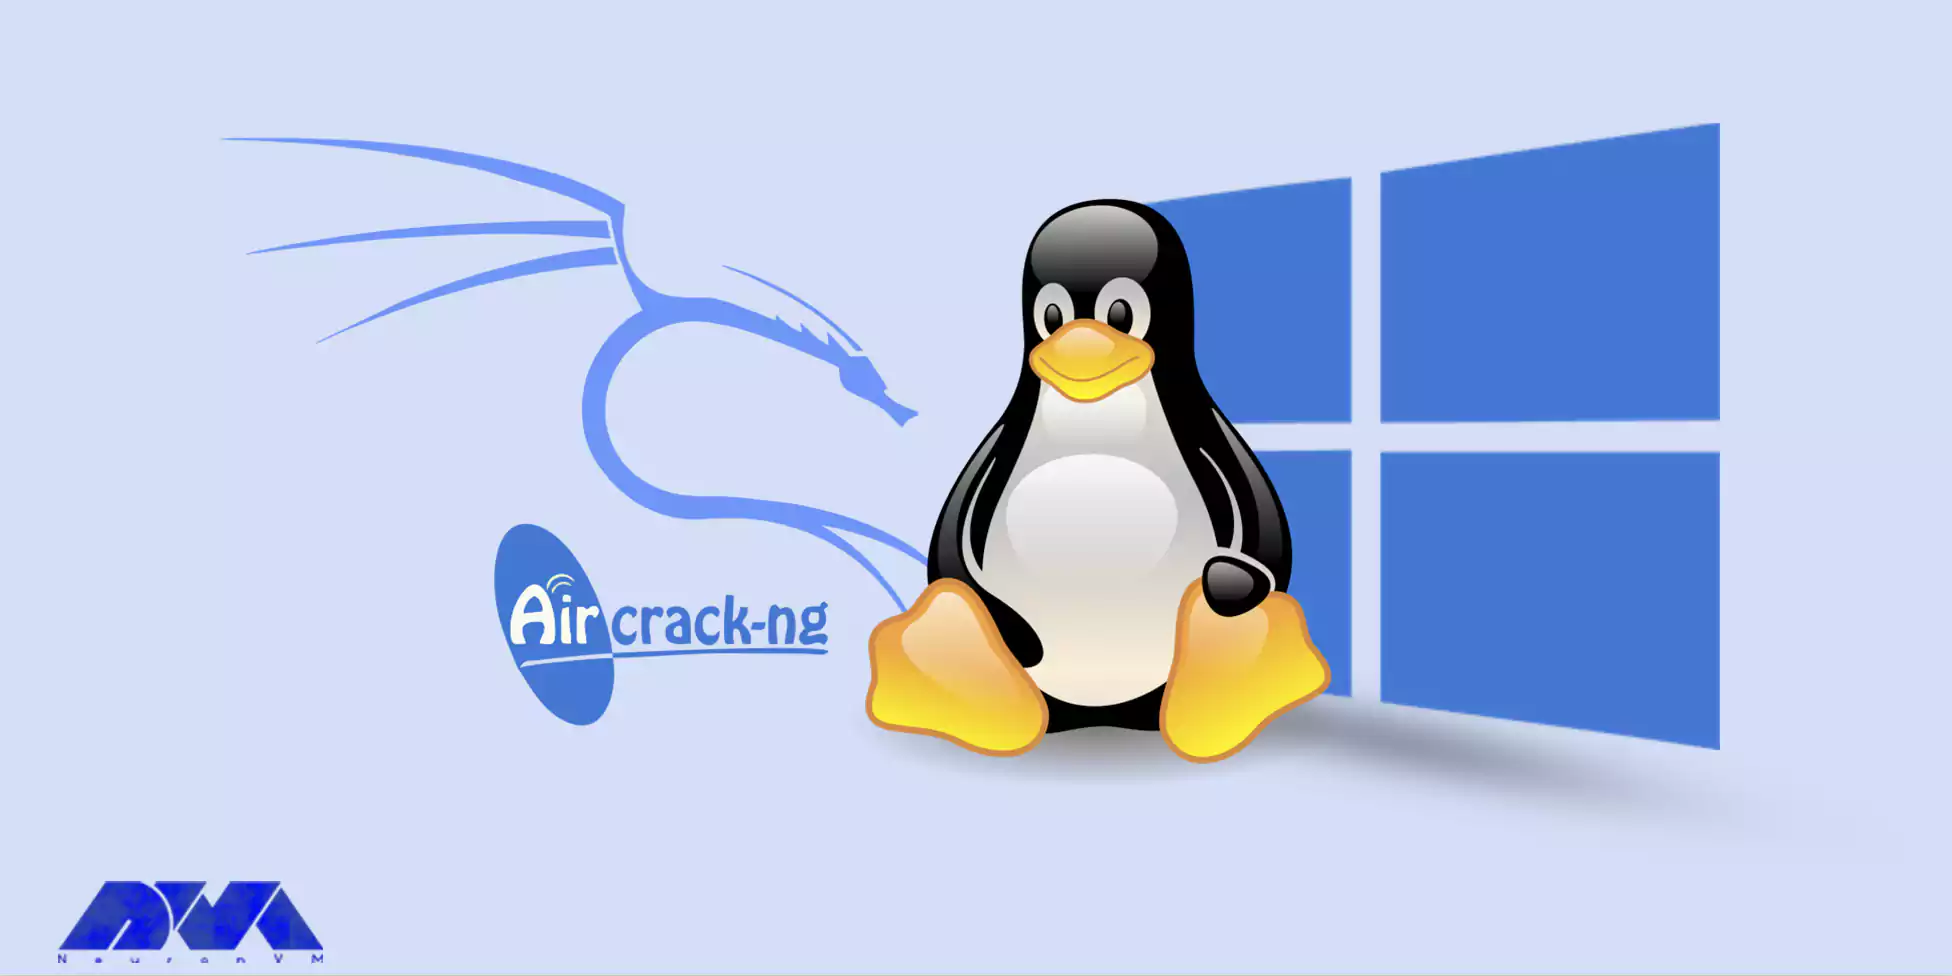 Installing Aircrack-ng on Kali Linux